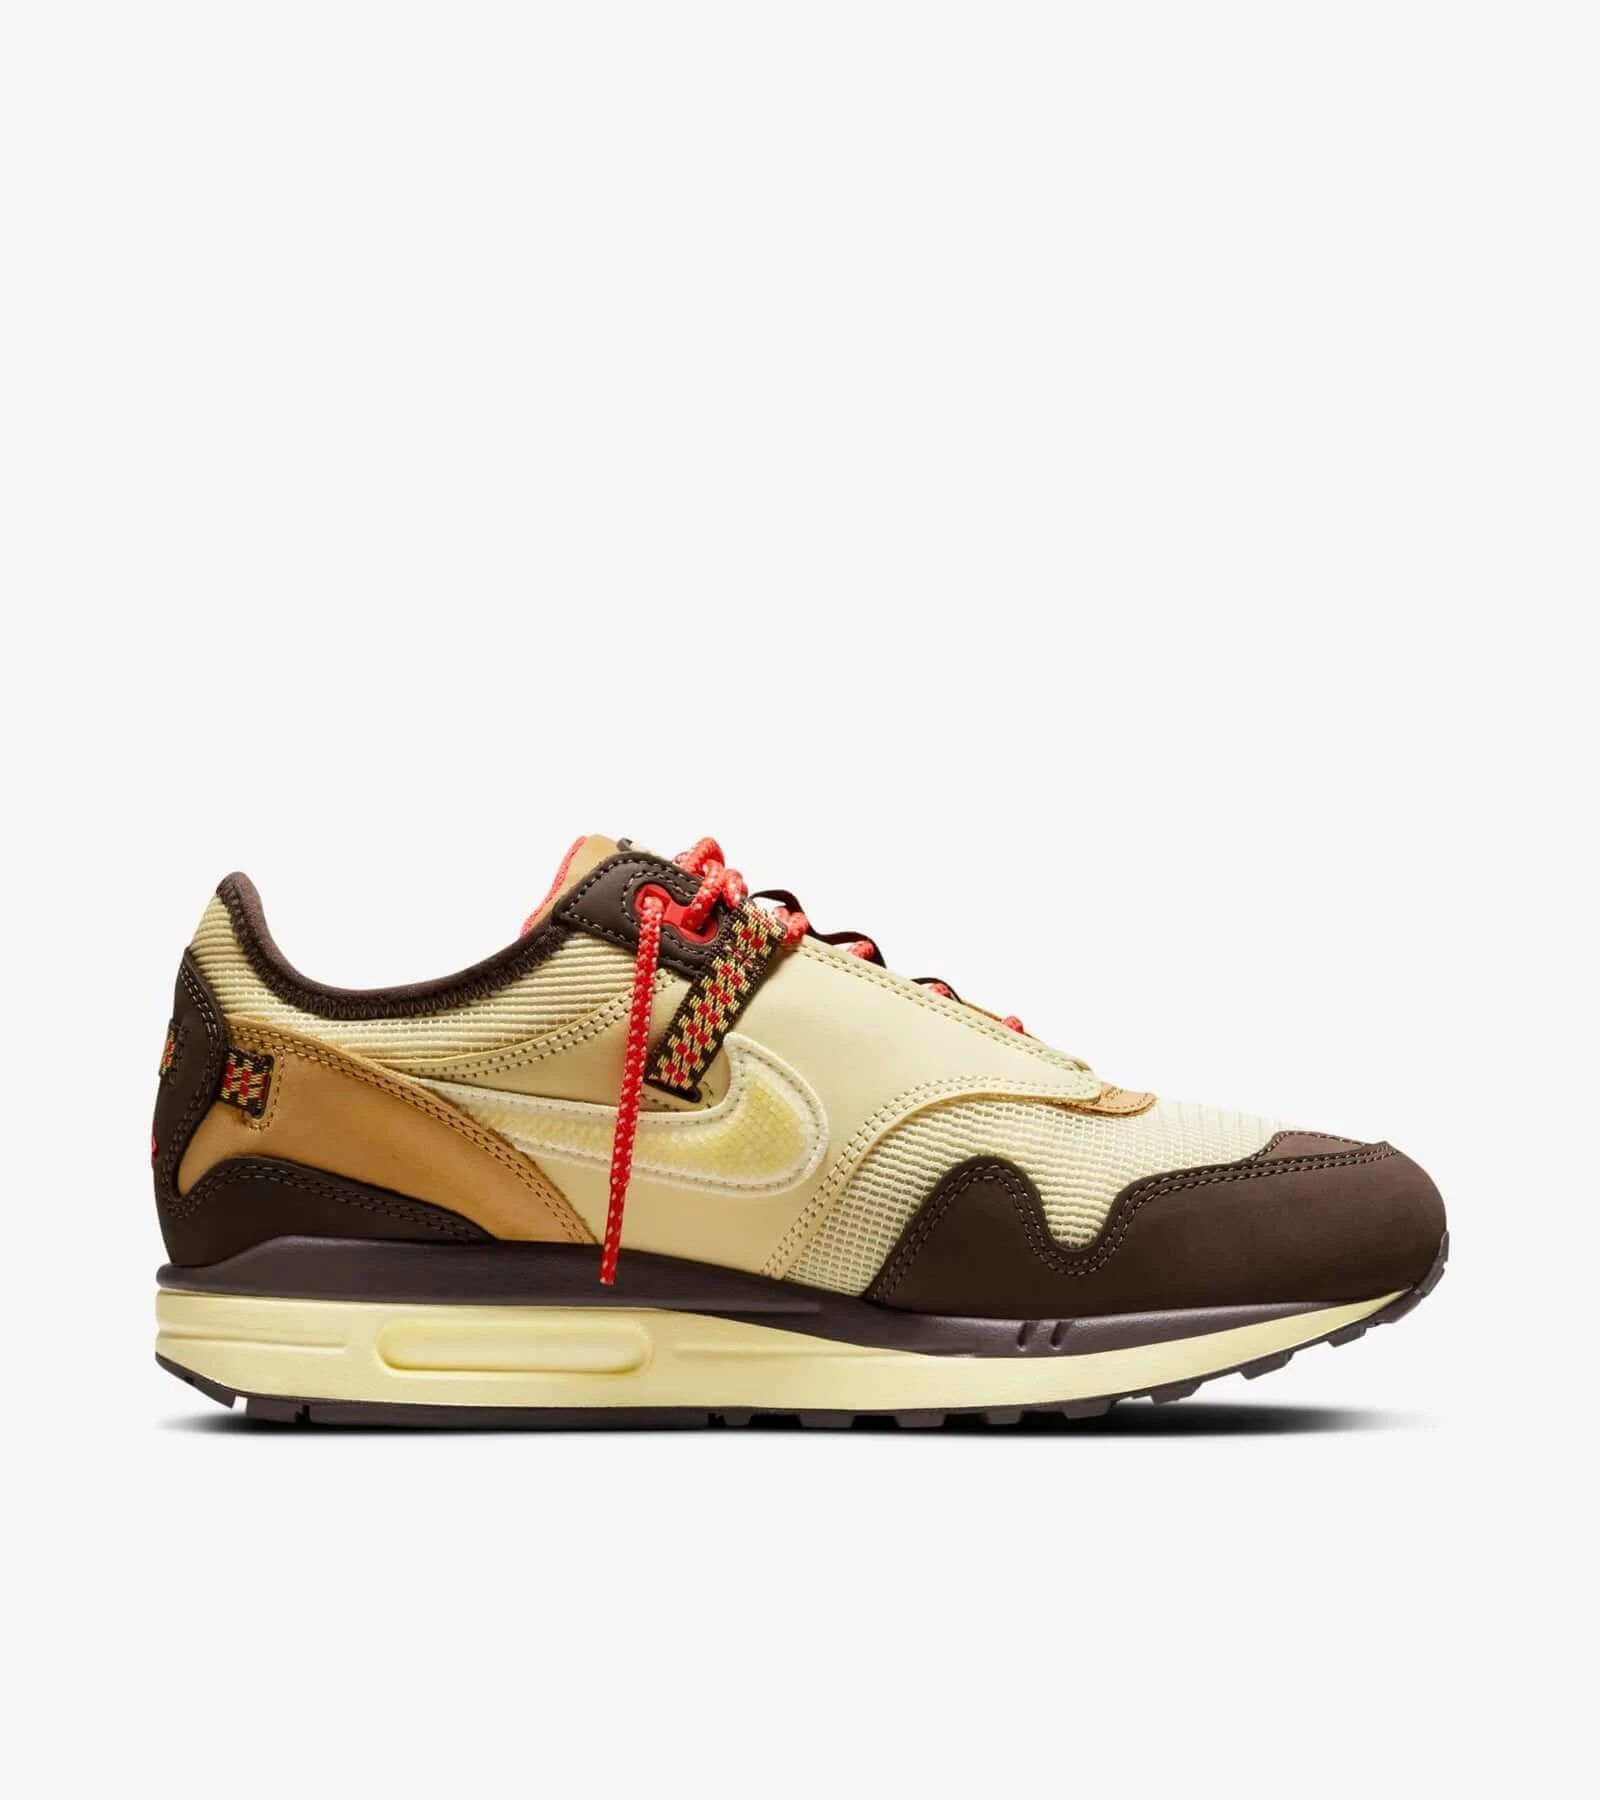 Travis Scott x Nike Air Max 1 “Baroque Brown”